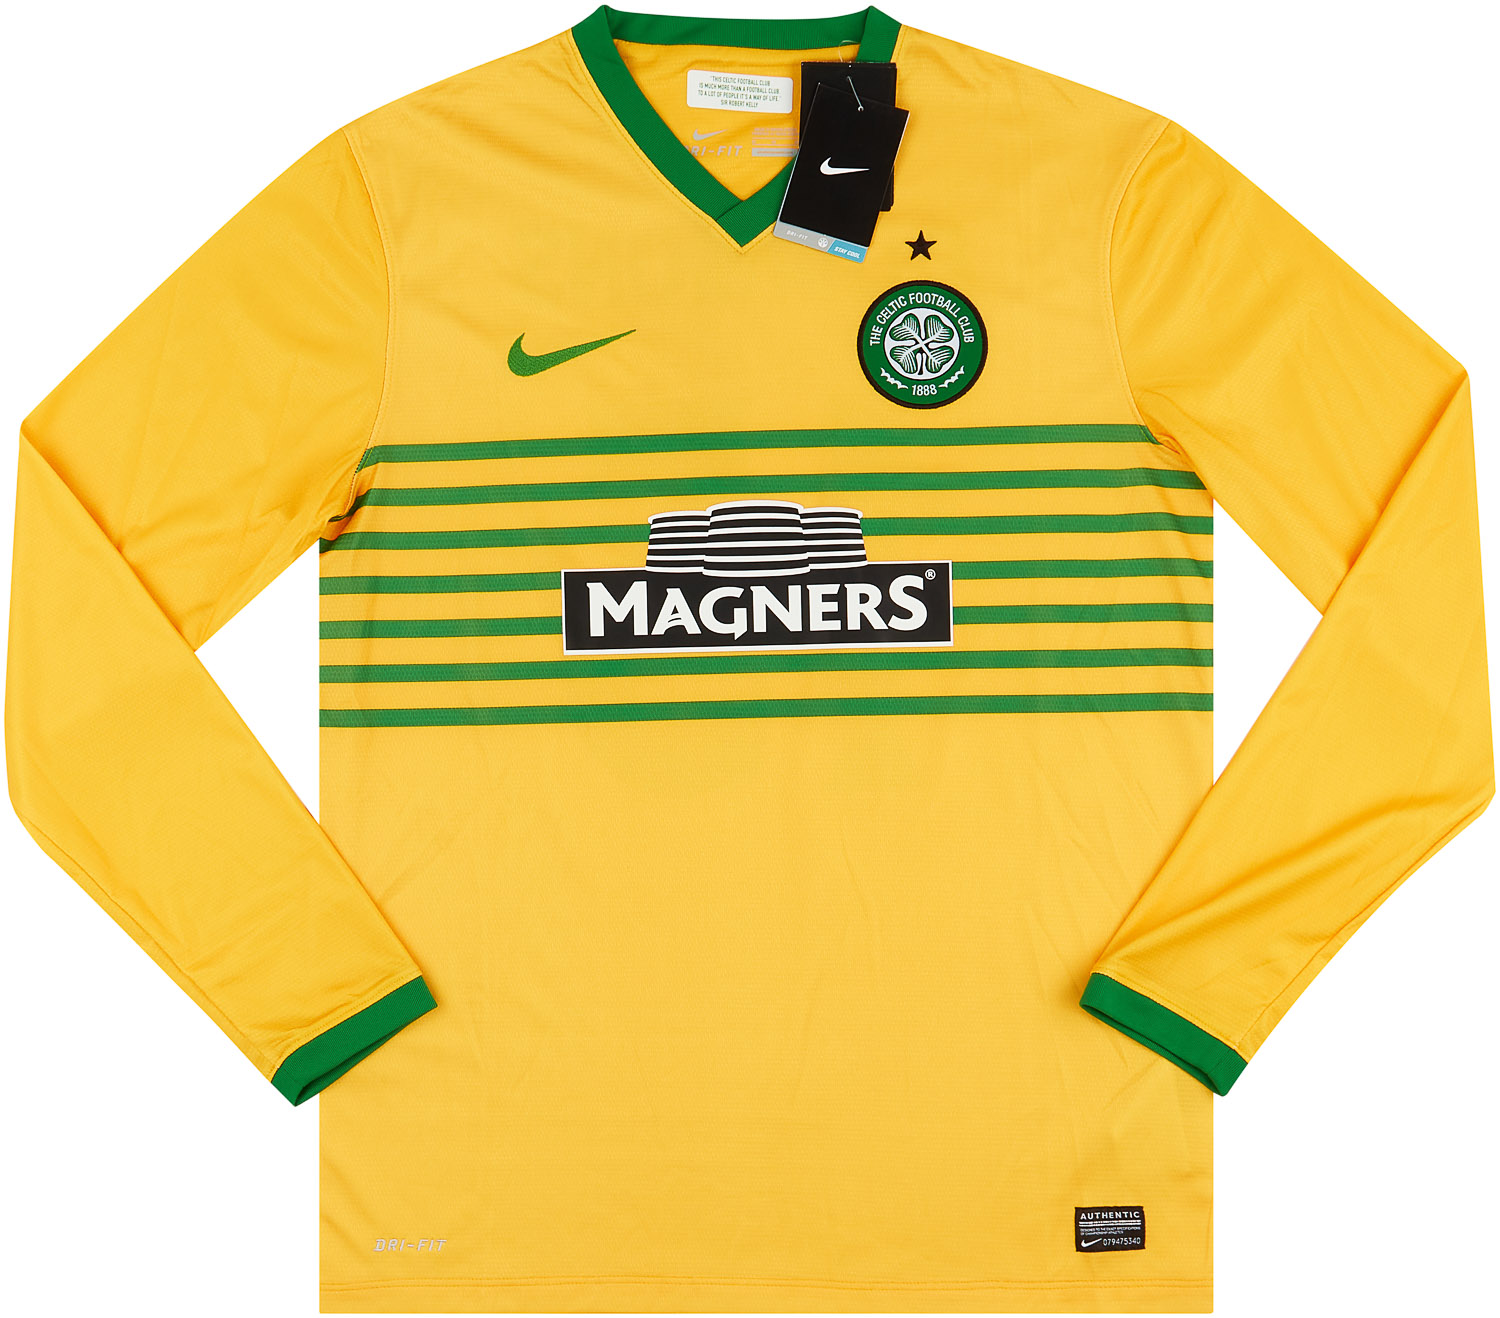 Celtic 2013-14 Home Kit